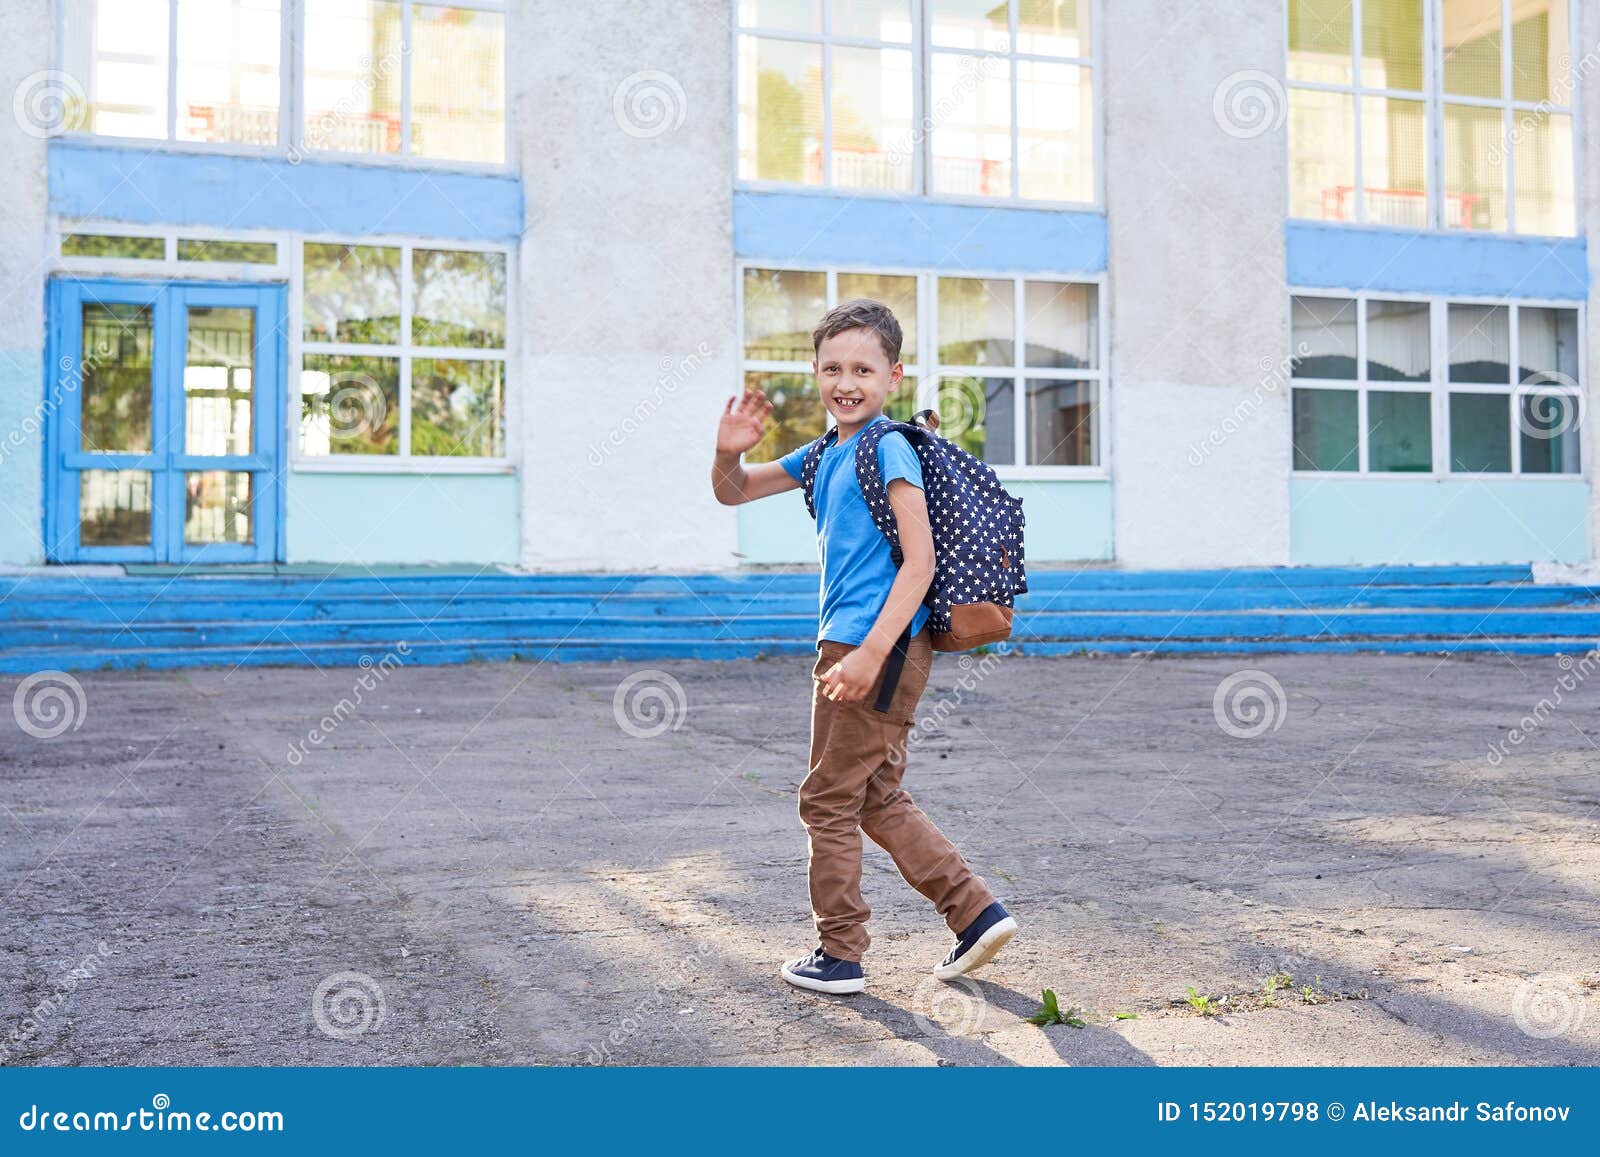 Мальчик придет в школу. Мальчик идет в школу. Мальчик который ходит в школу. Школьники идут в школу. Мальчишка идёт в школу.